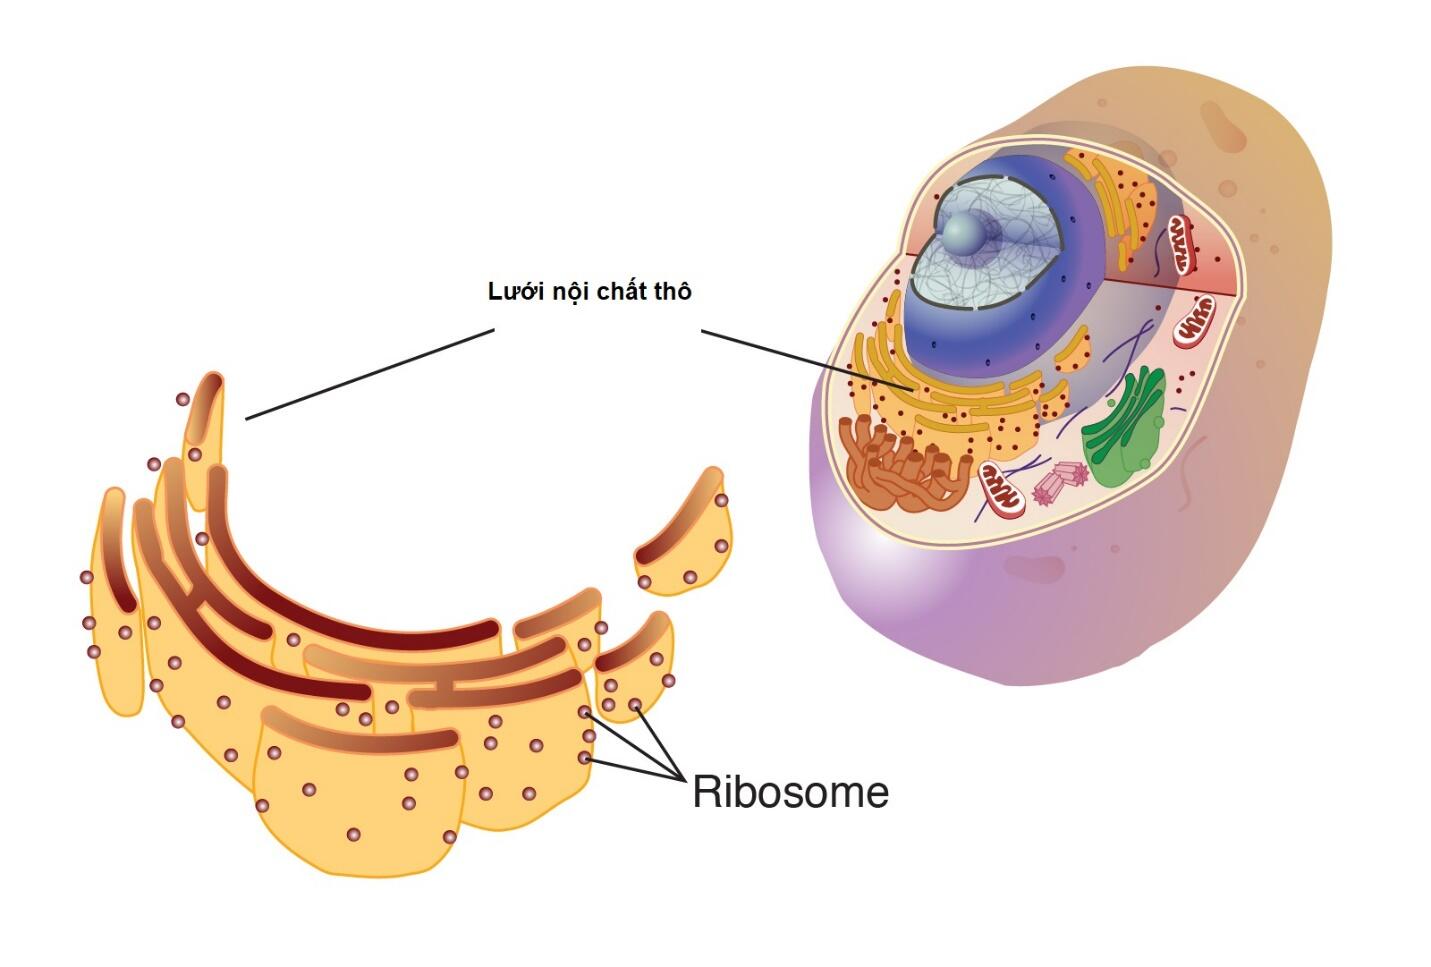 Mô tả cấu trúc của ribosome